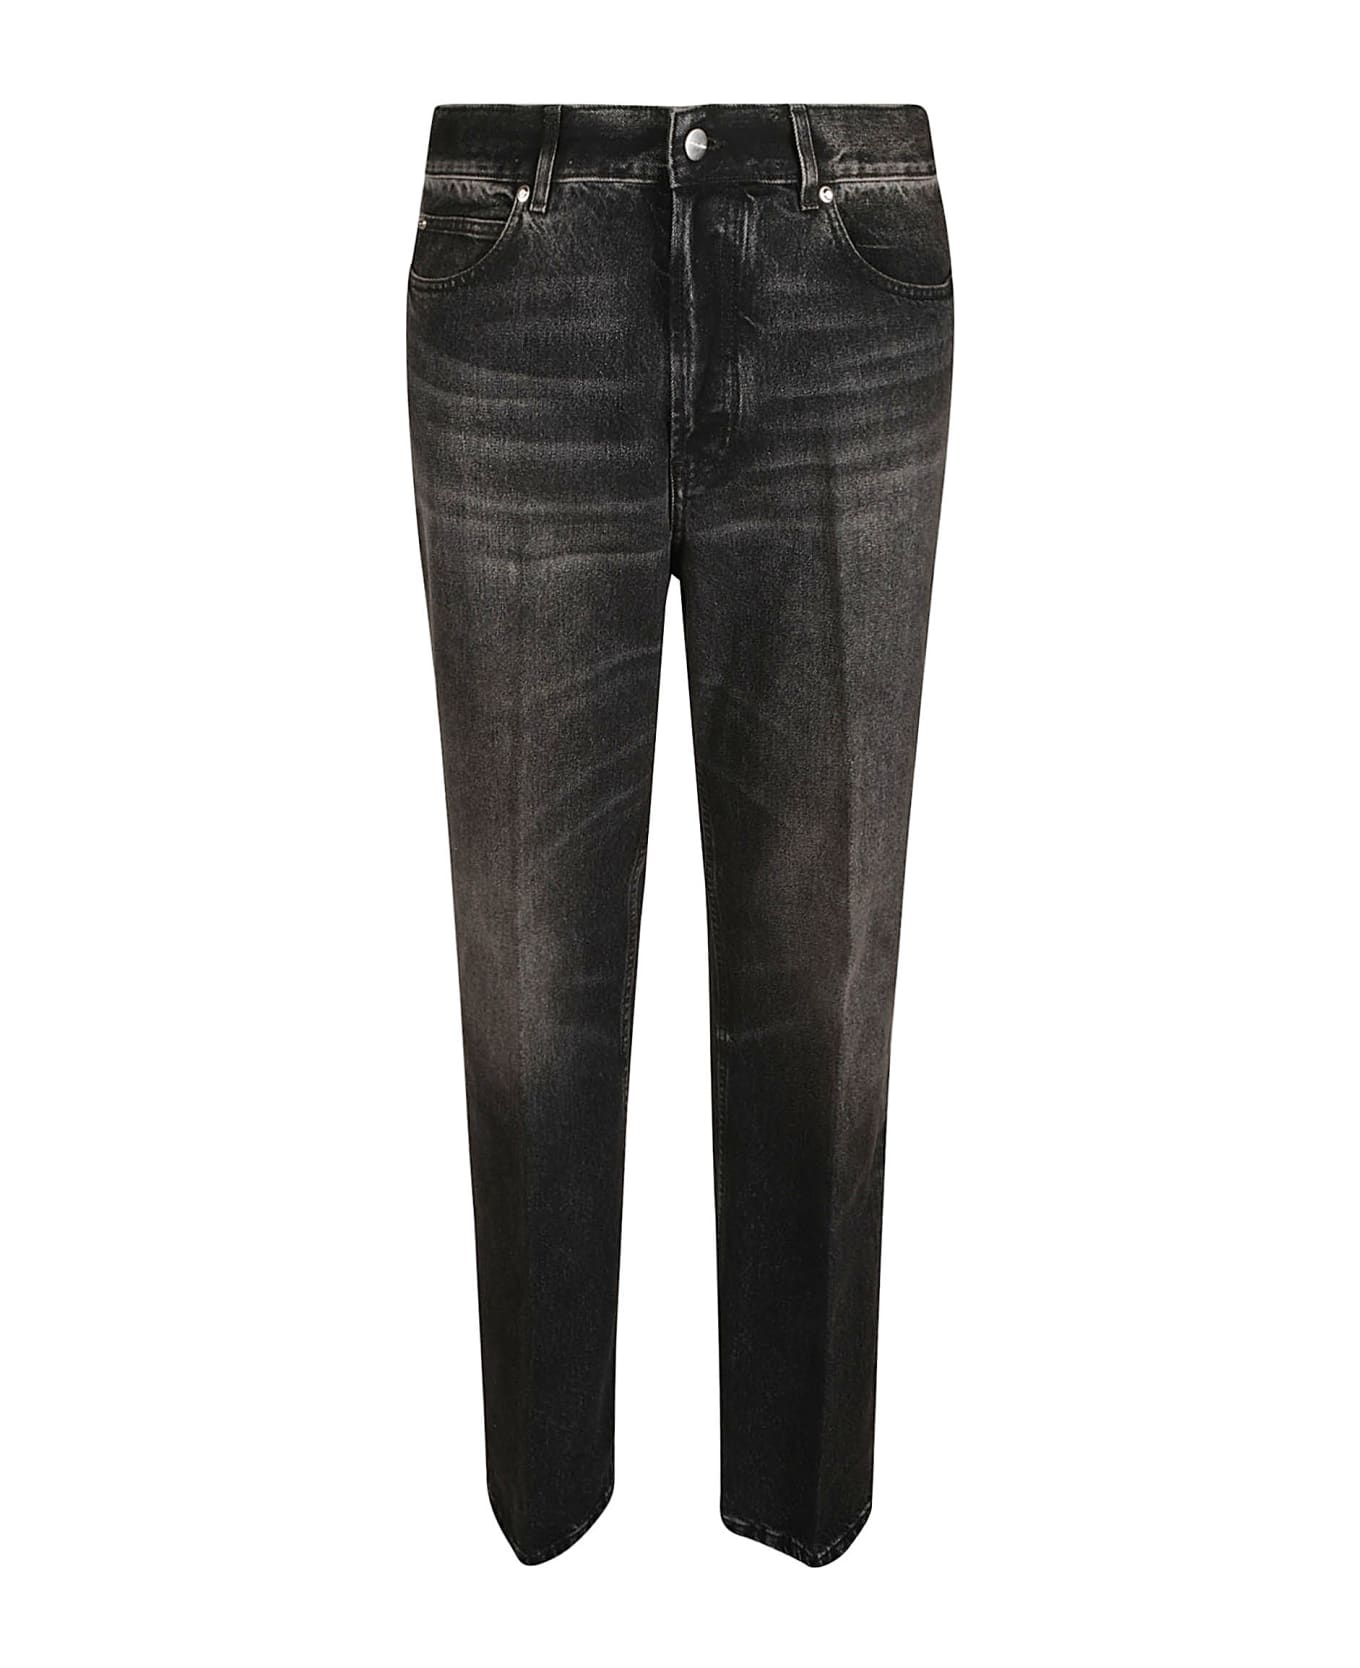 Ferragamo Buttoned Classic Jeans - Black